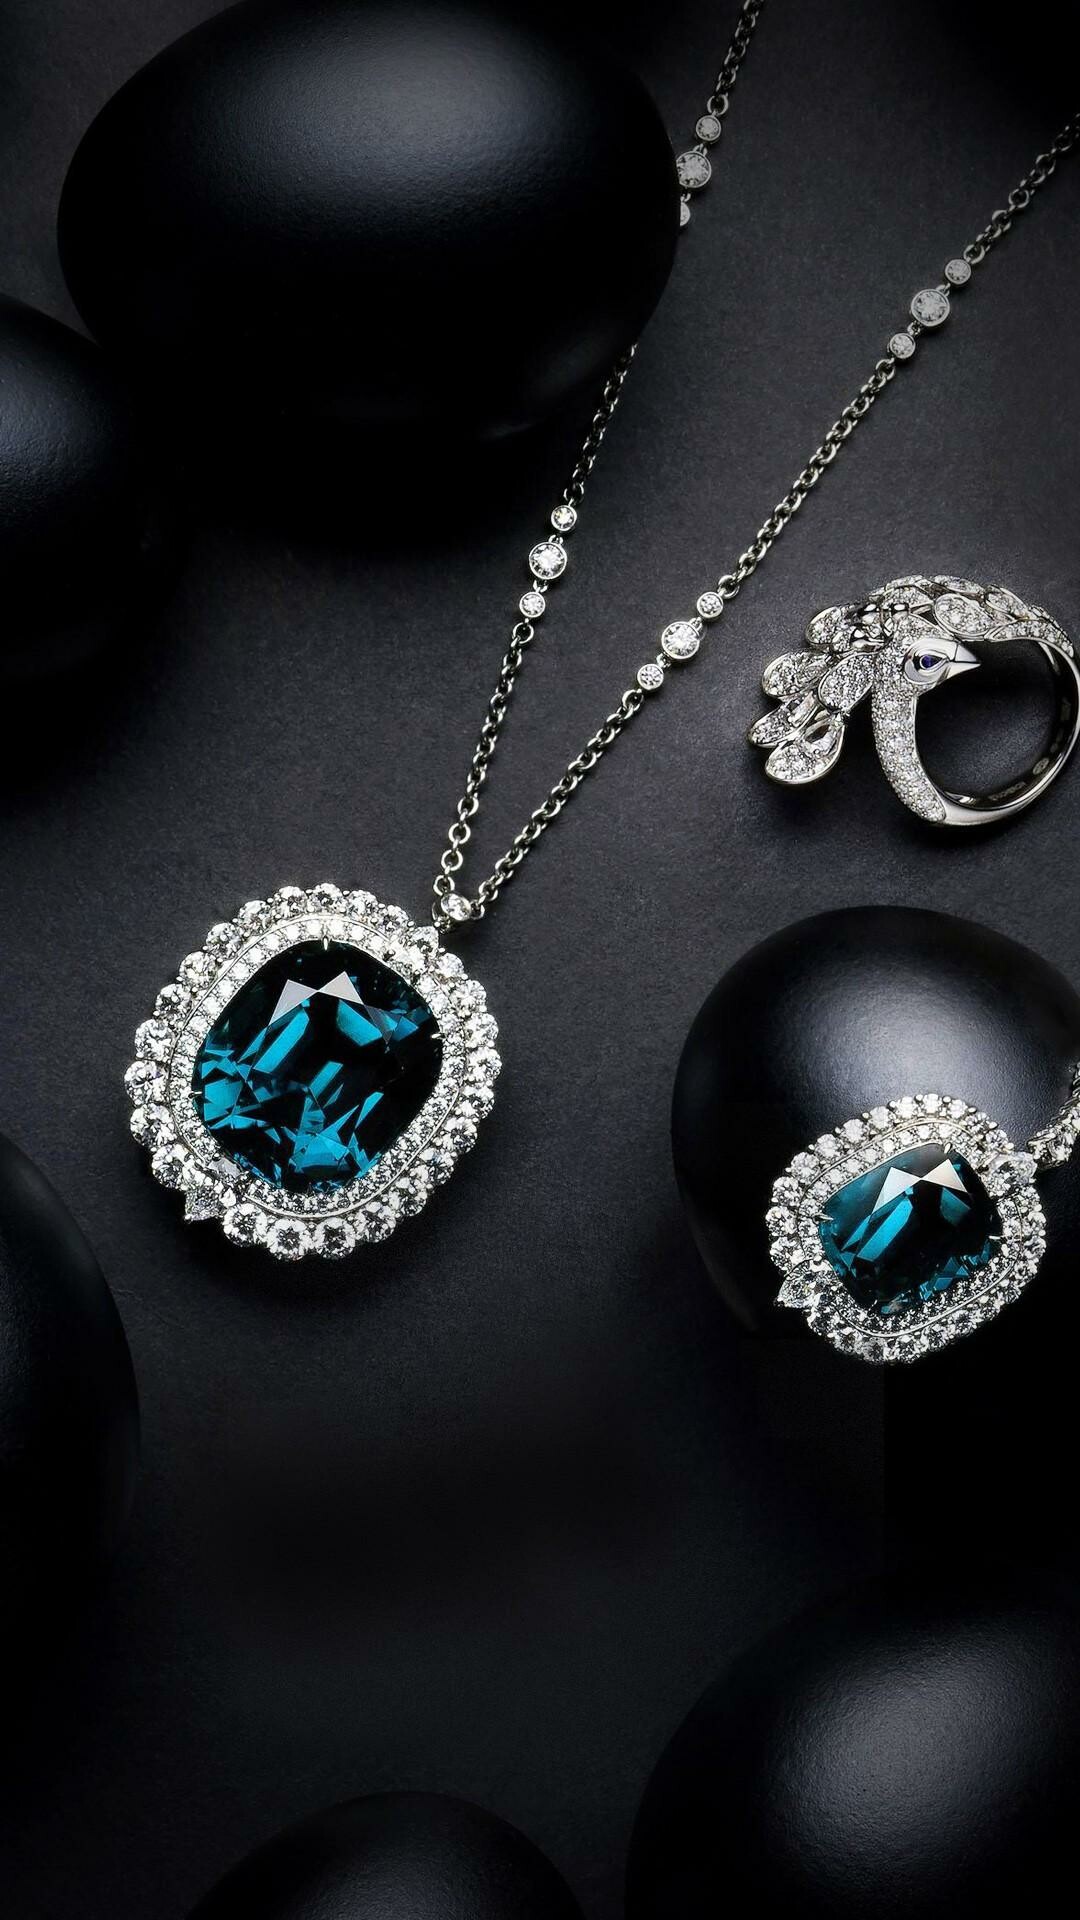 Jewels: Sapphire, Known as a blue gemstone. 1080x1920 Full HD Wallpaper.